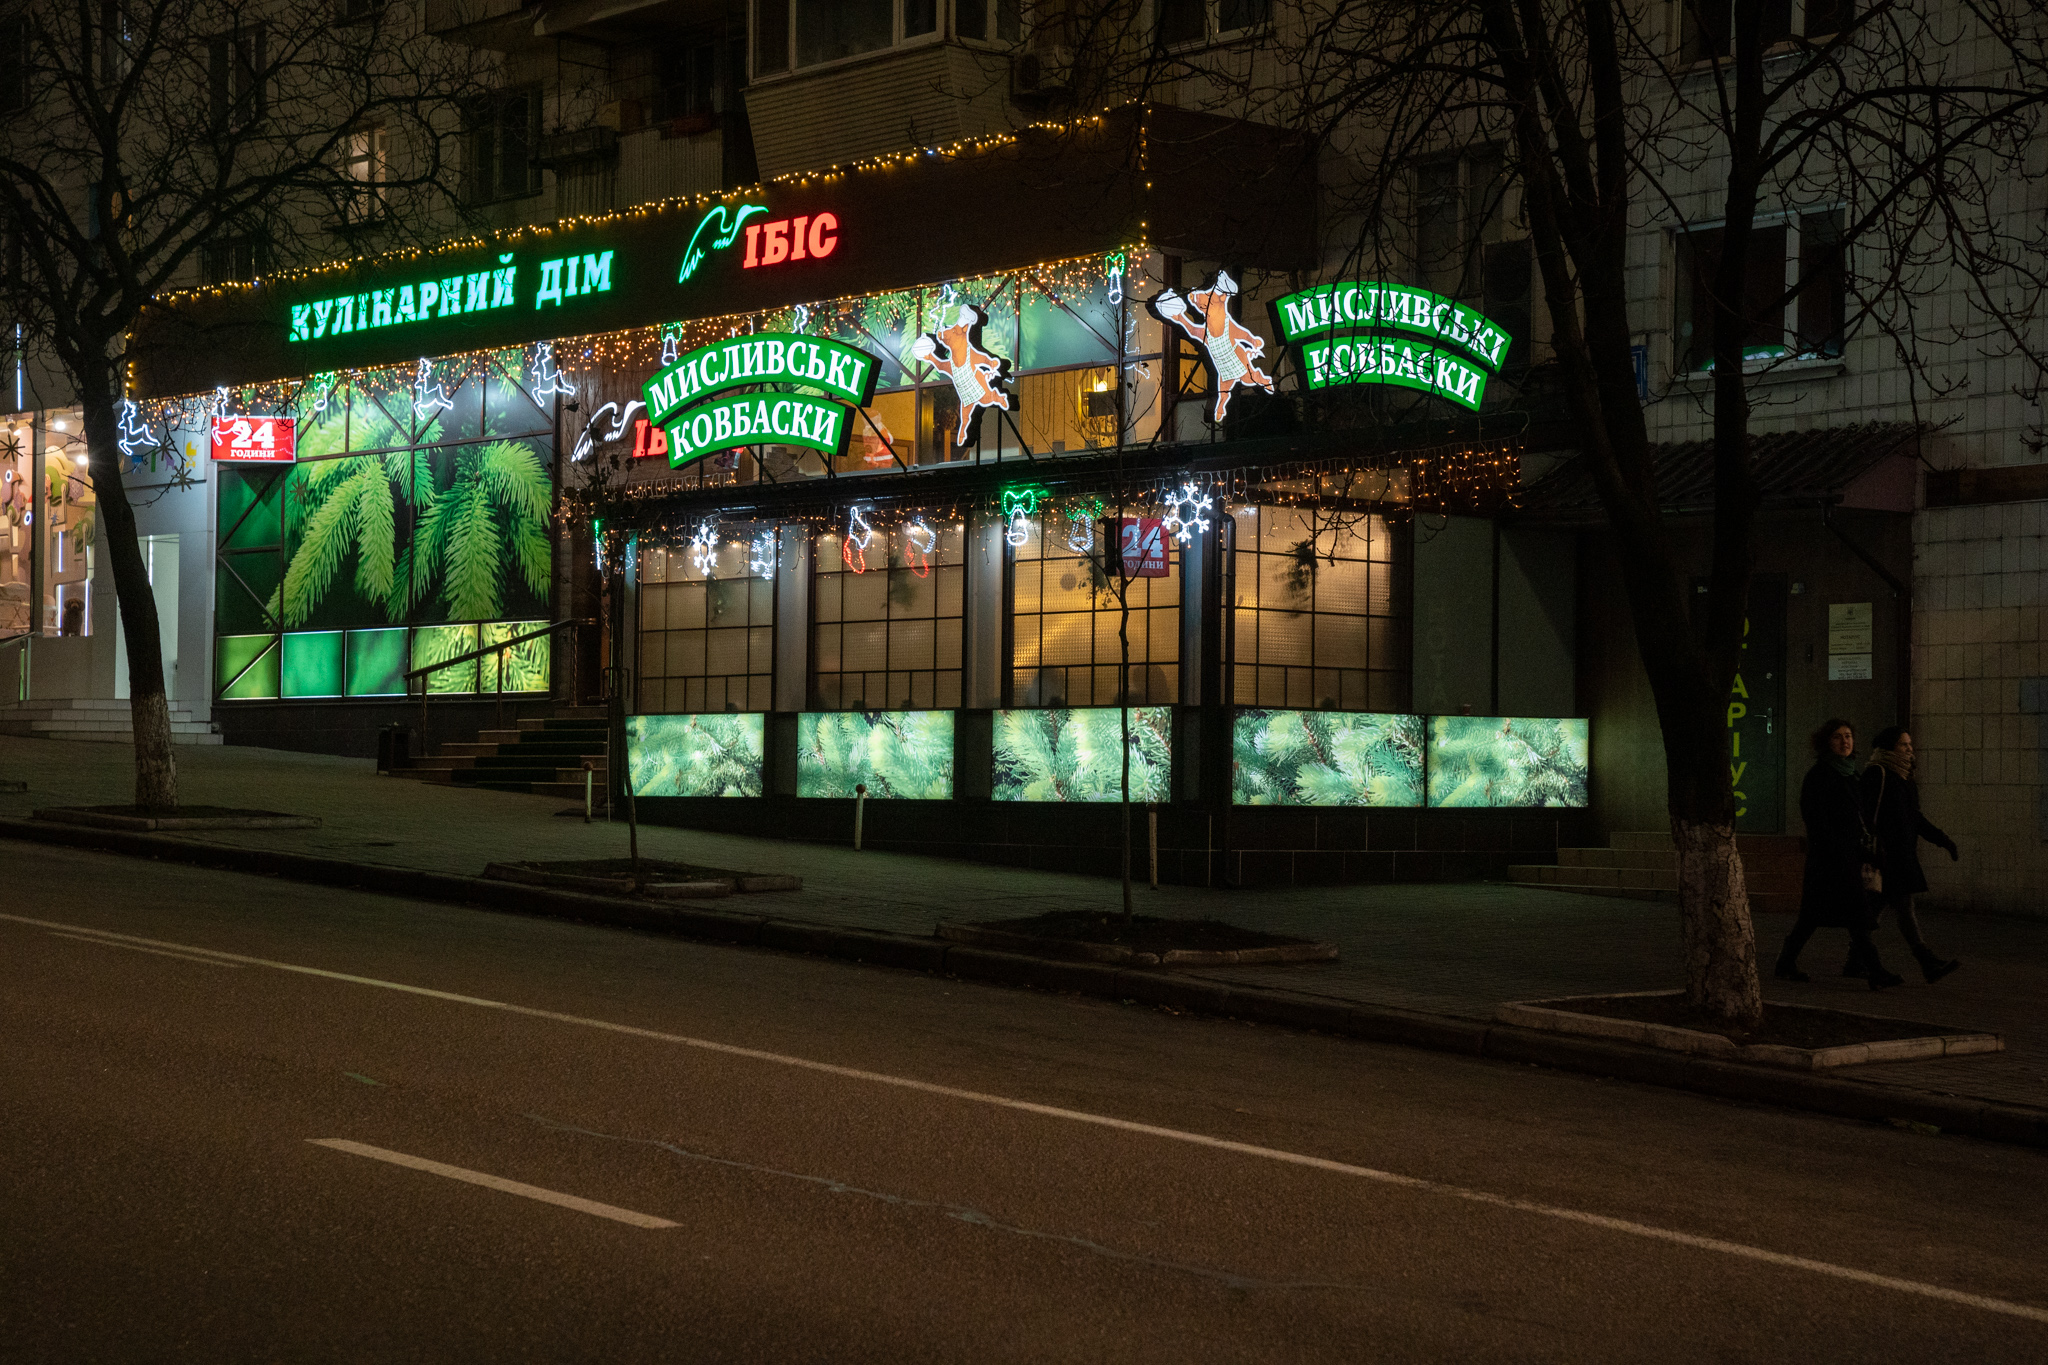 Kiev. IBIS. 2020 — Lumiere | Light illumination | Ukraine